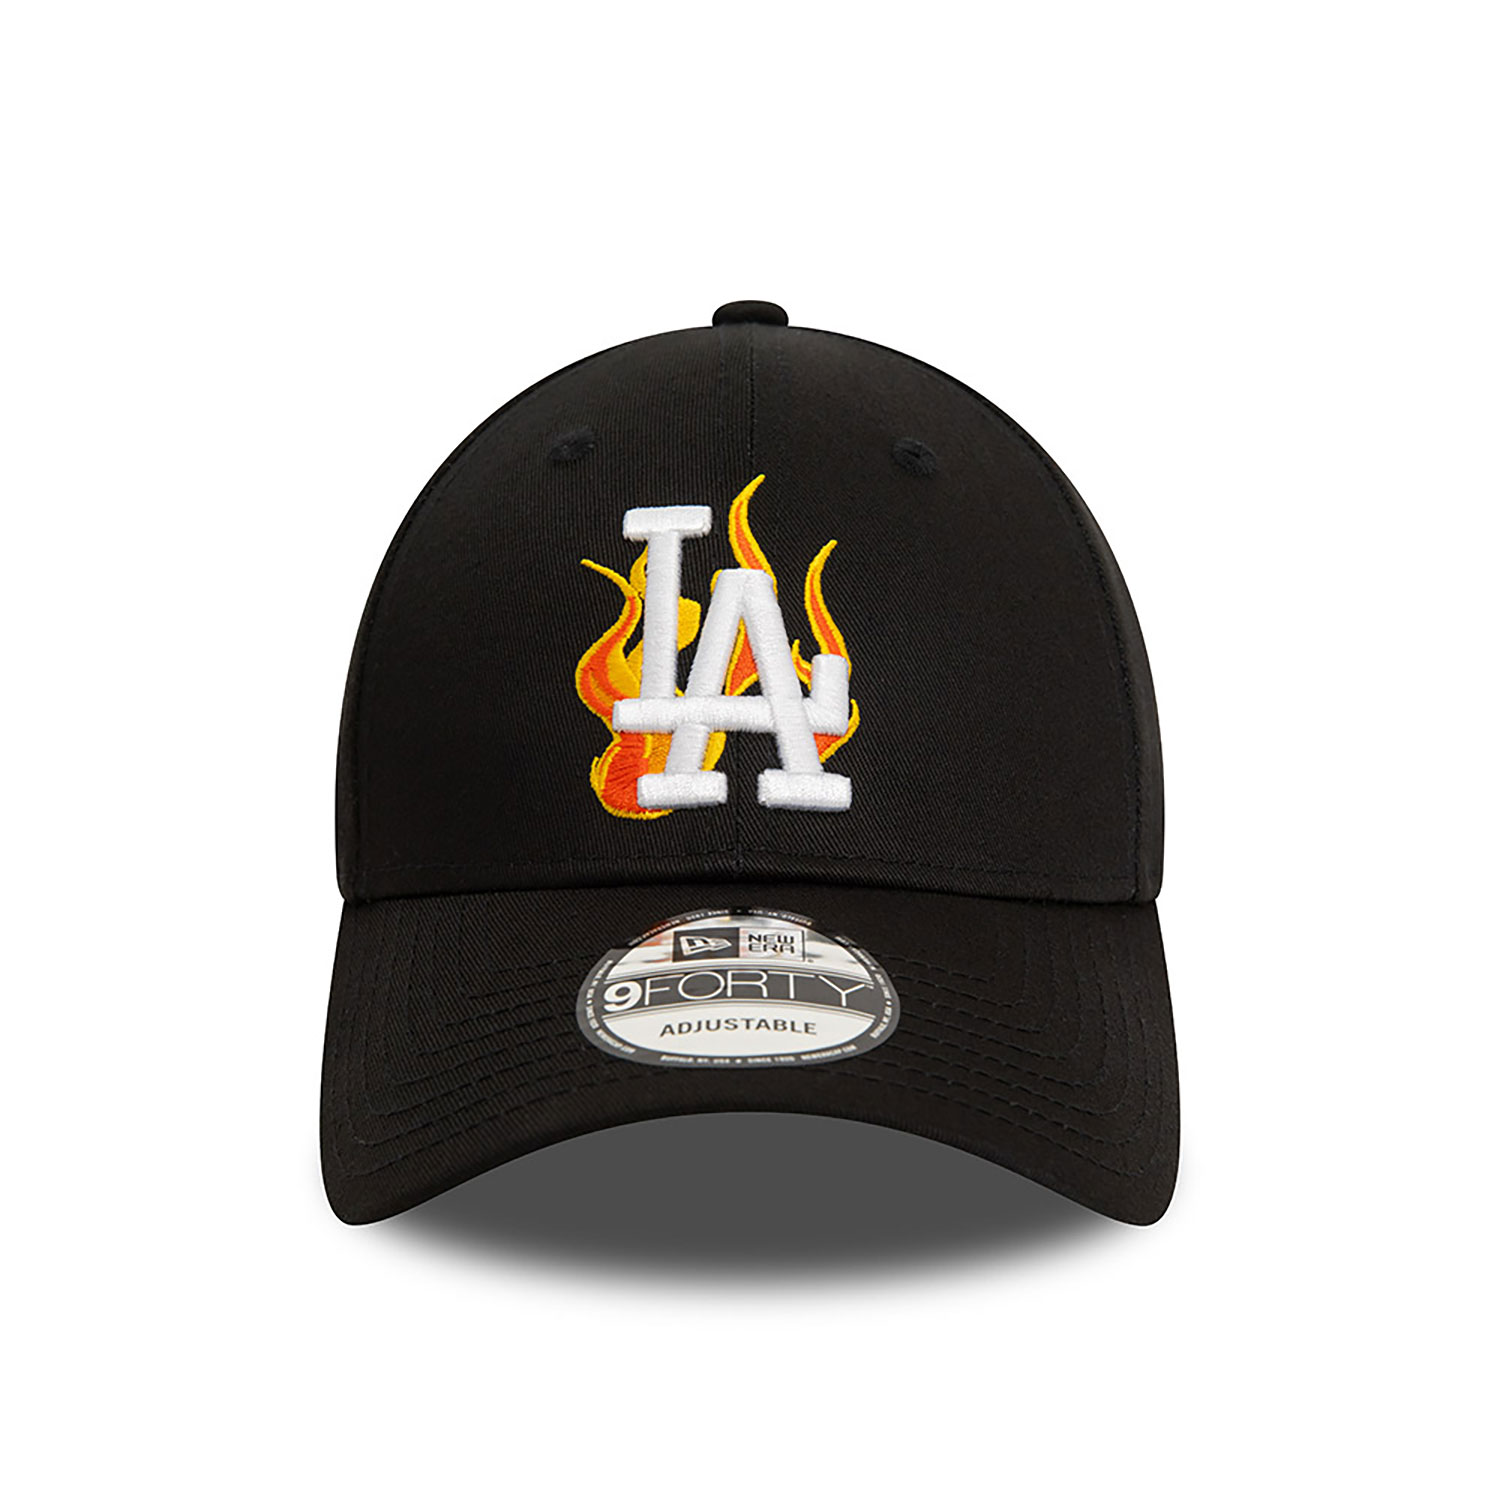 LA Dodgers MLB Flame Black 9FORTY Adjustable Cap